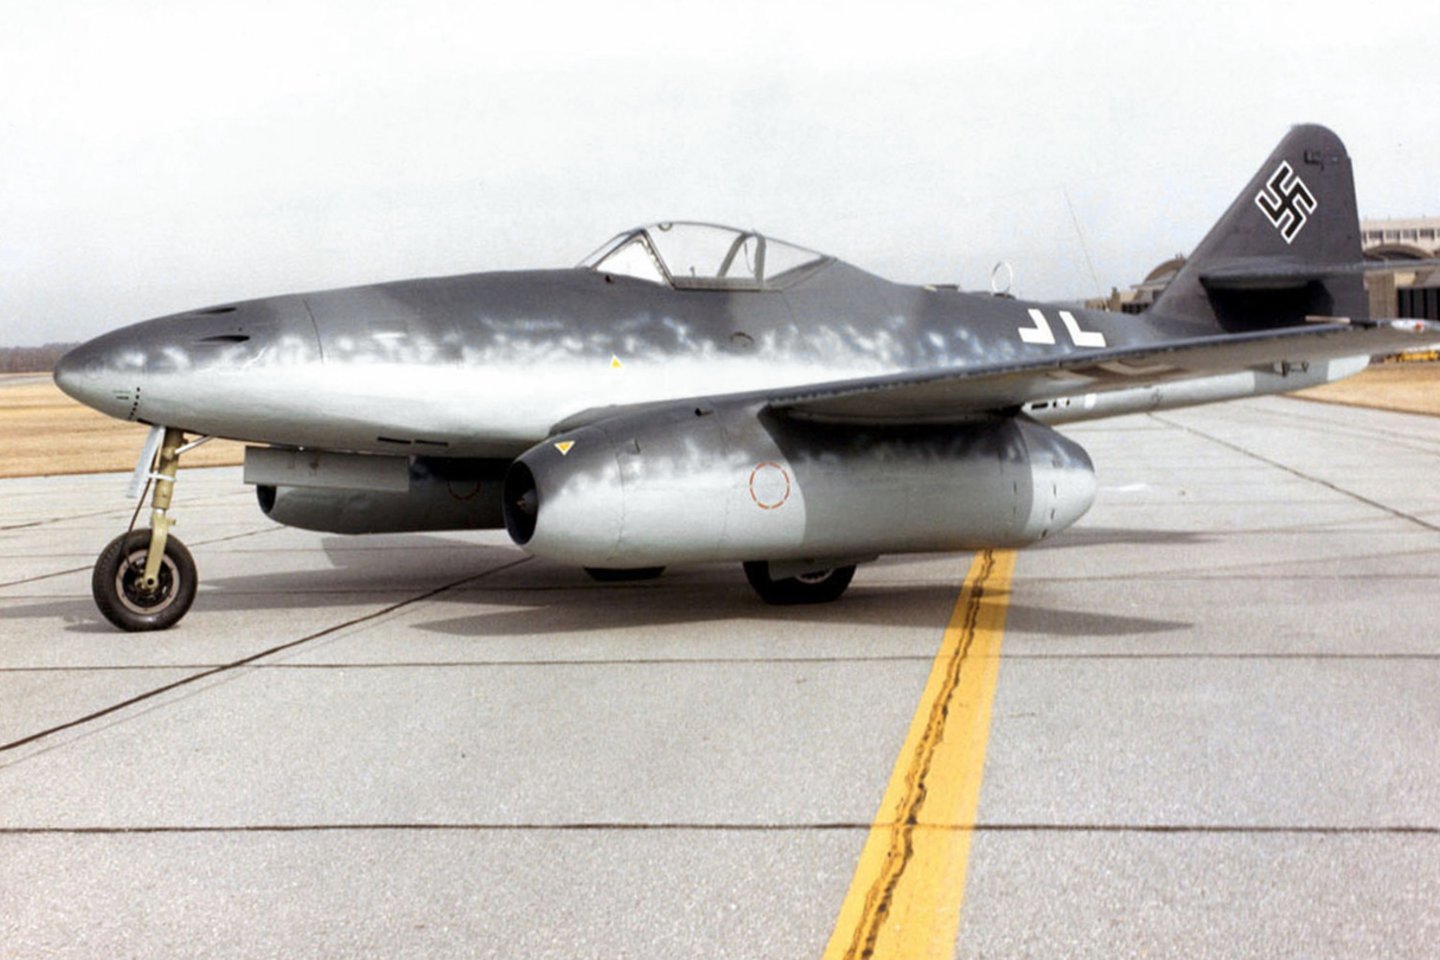 1941 m. Vokietija išbandė dar vieną „meseršmitą“ – naikintuvo „Me-262“ prototipą, dar vadinamą „Kregžde“ (vokiškai – Schwalbe). Jis laikomas pirmuoju serijinės gamybos reaktyviniu lėktuvu, naudotu karo veiksmuose. Baigiantis II pasauliniam karui Vokietijos karo pramonė pagamino 1430 tokių naikintuvų.<br>wikipedia nuotr.